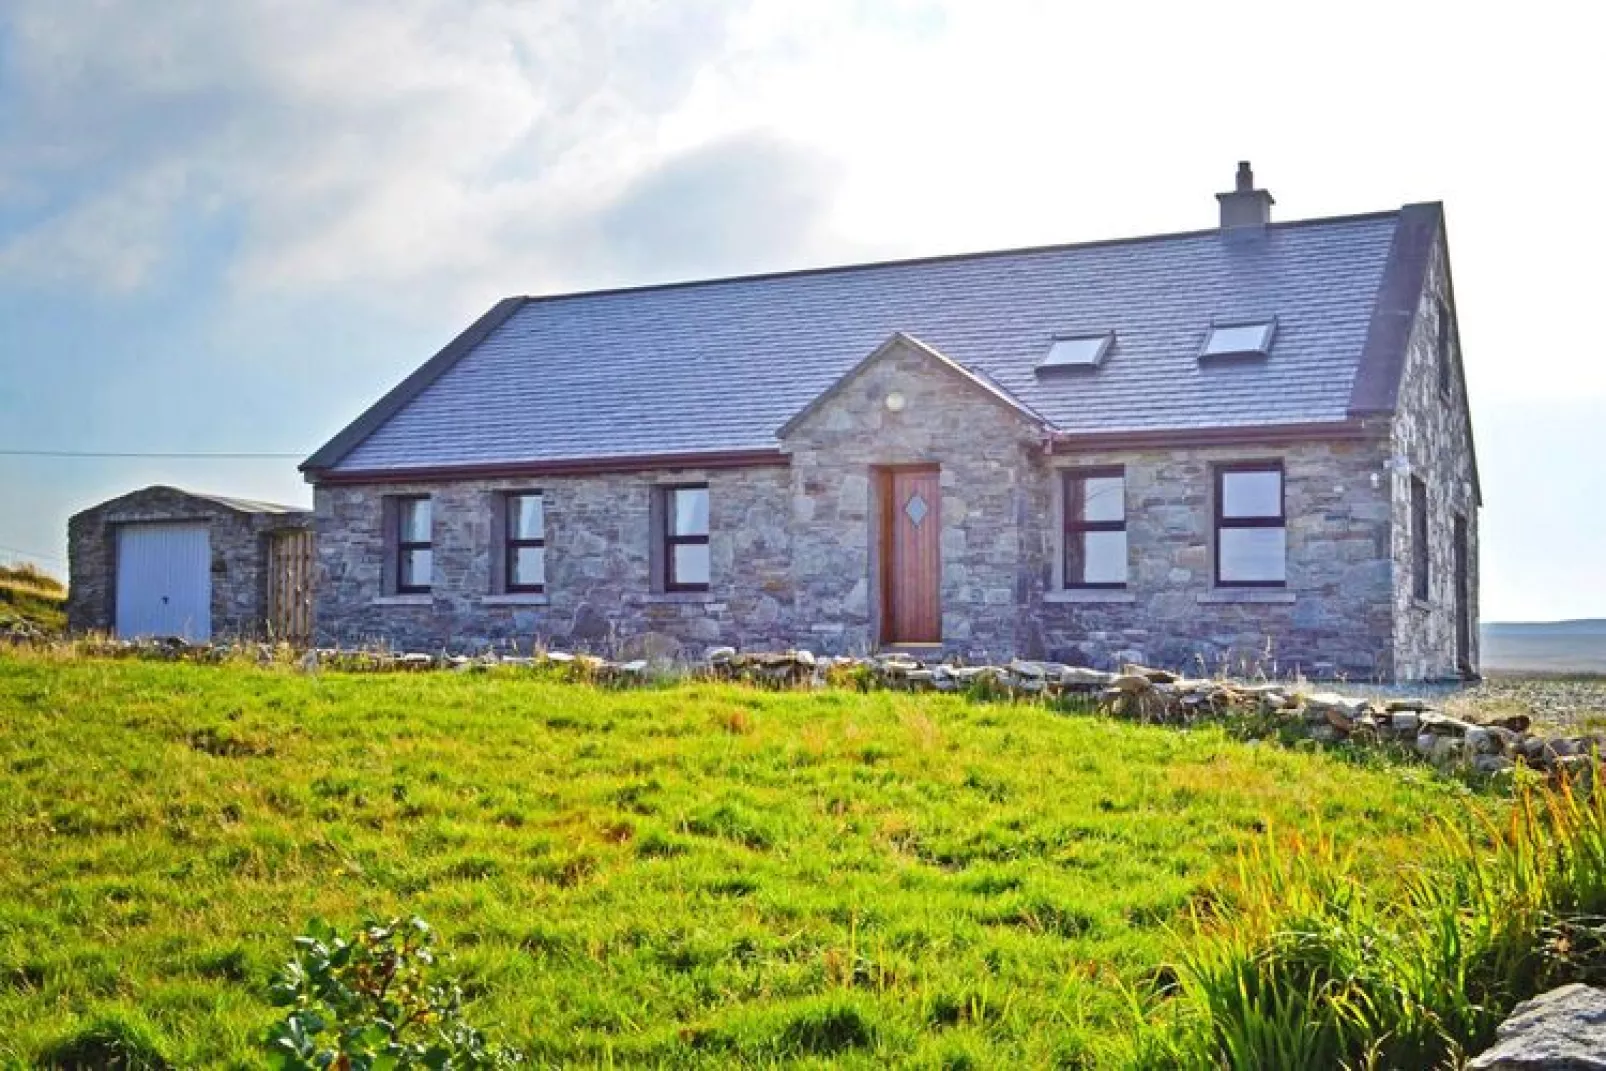 Cottage in Cleggan Co Galway Ireland